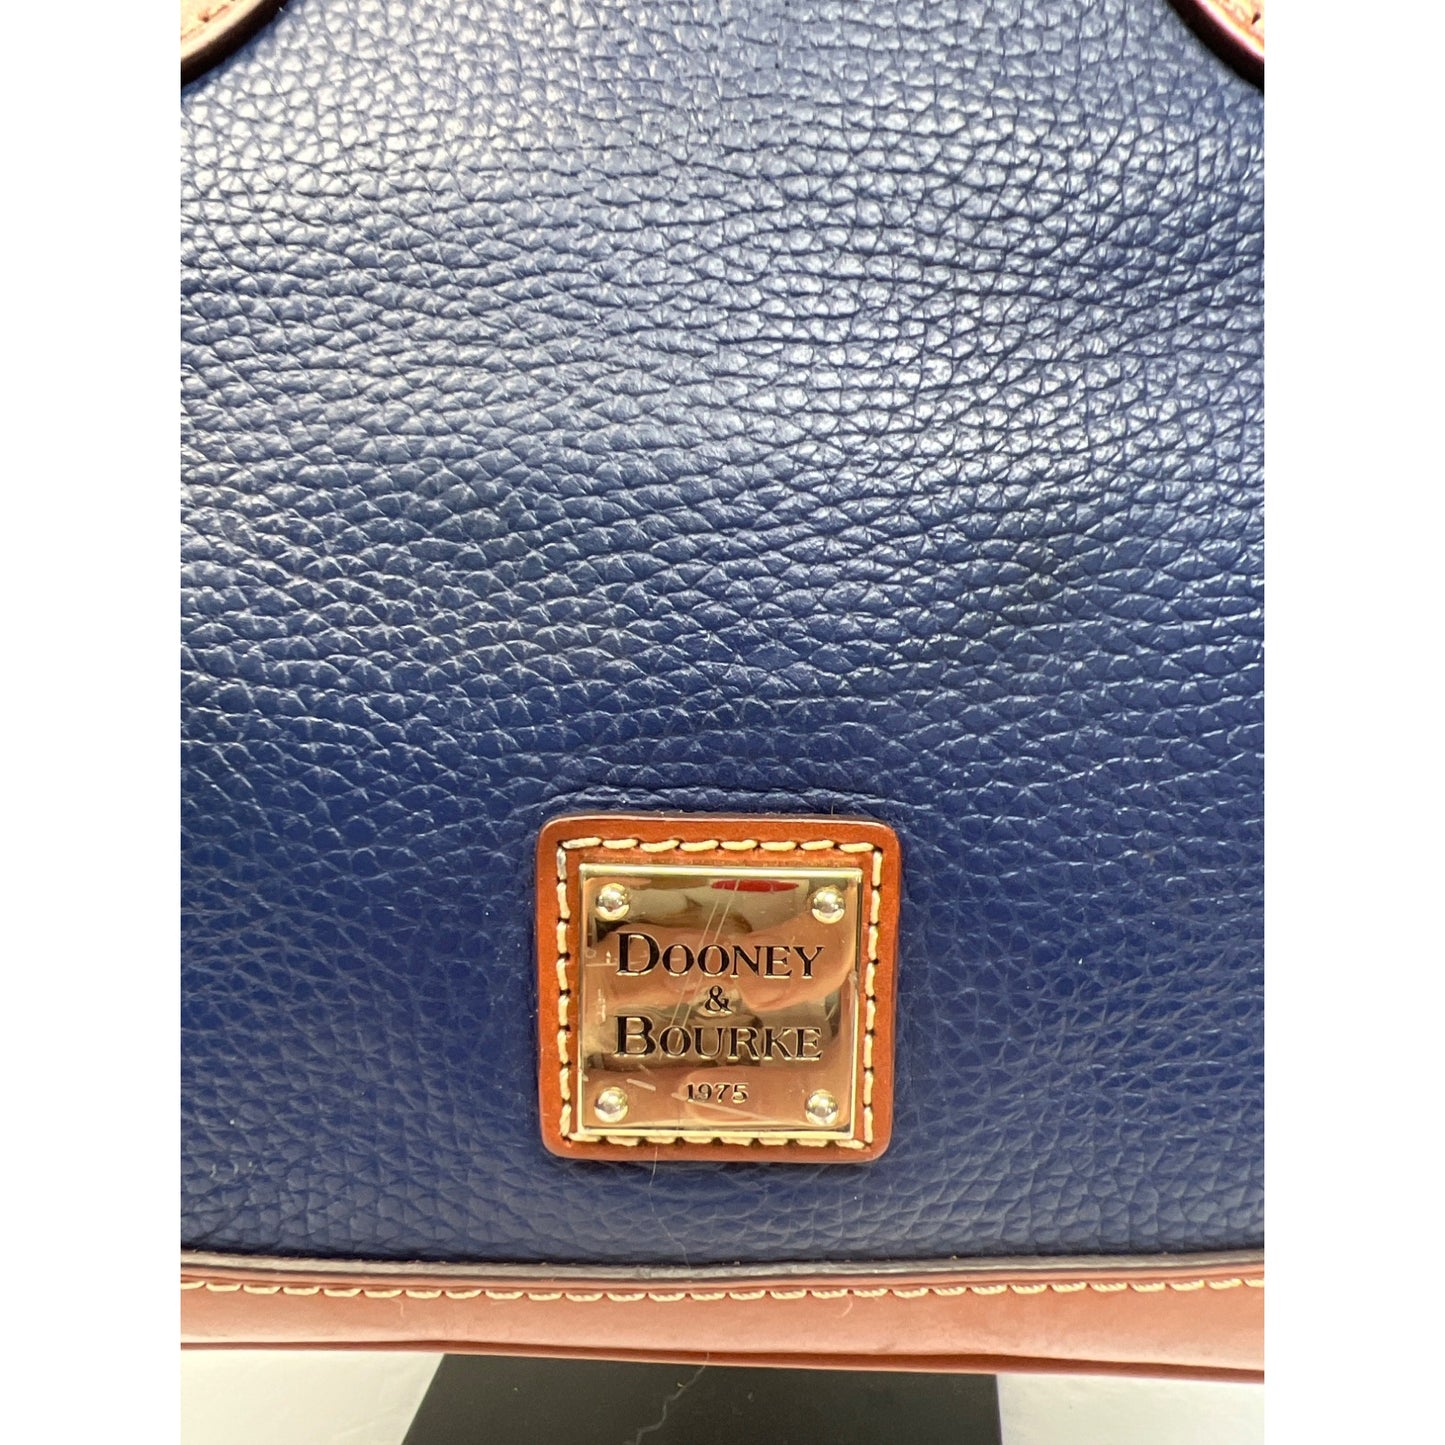 Dooney & Bourke Pebble Grain Navy Blue Leather Satchel